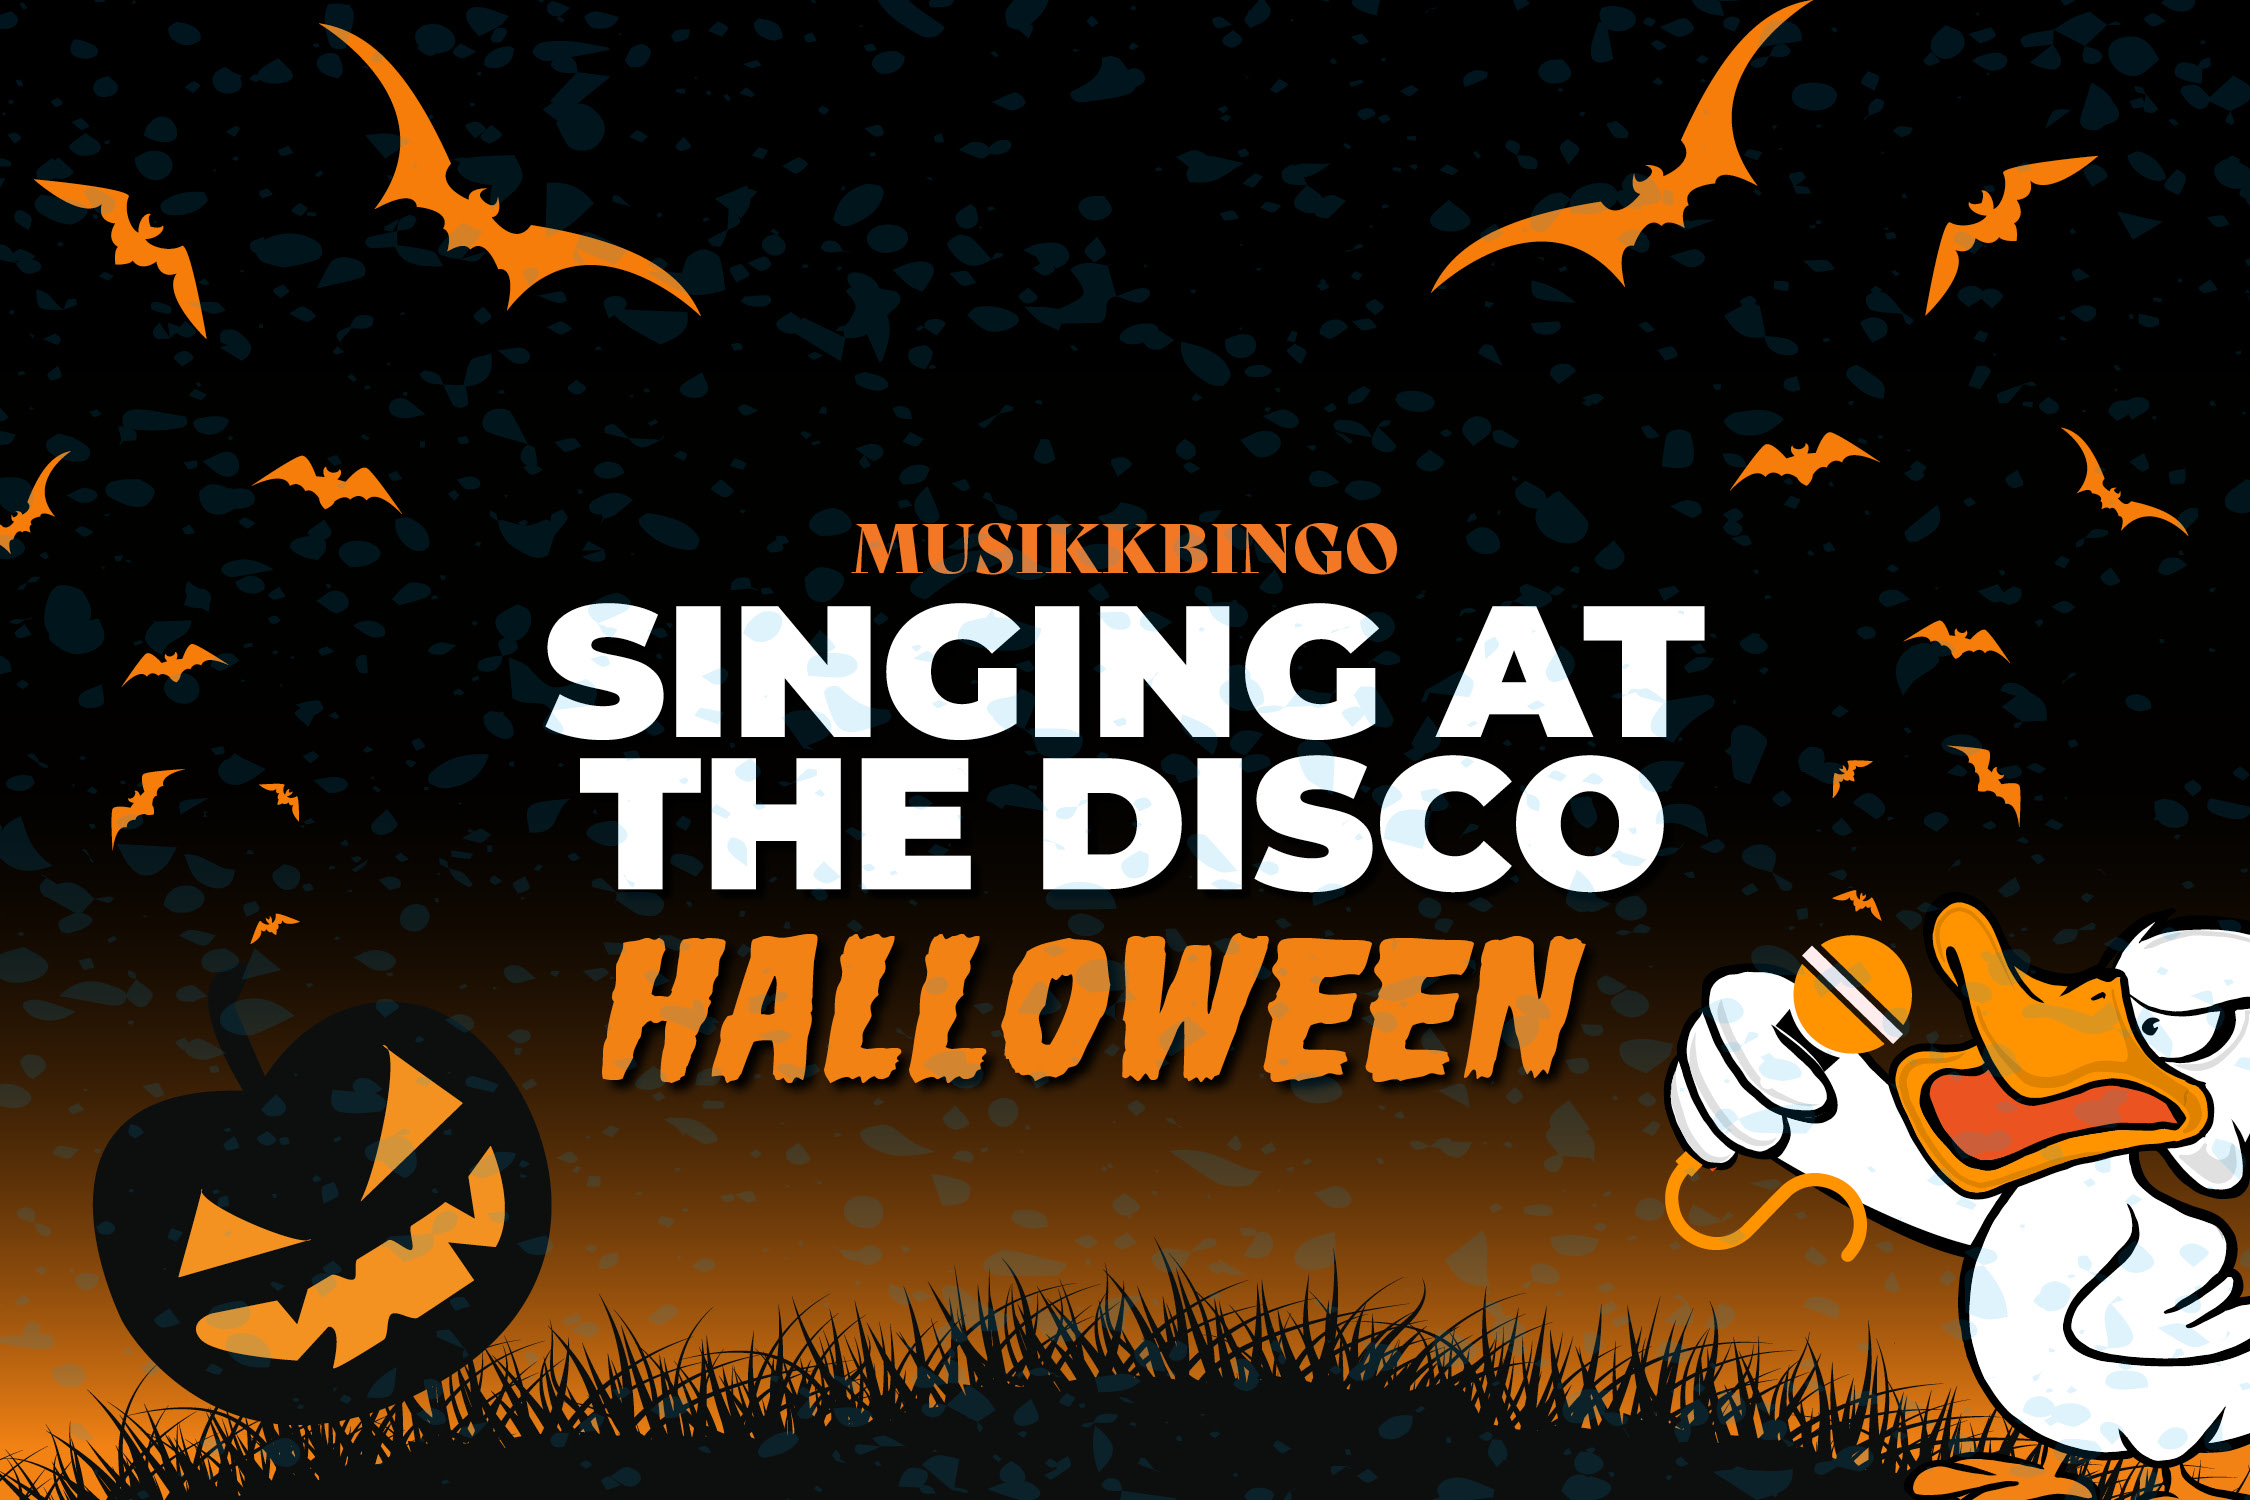 Tekst: "Singing at the disco, halloween." Flaggermus og gresskar grafikk i bakgrunnen mens en and synger inn i en mikrofon.